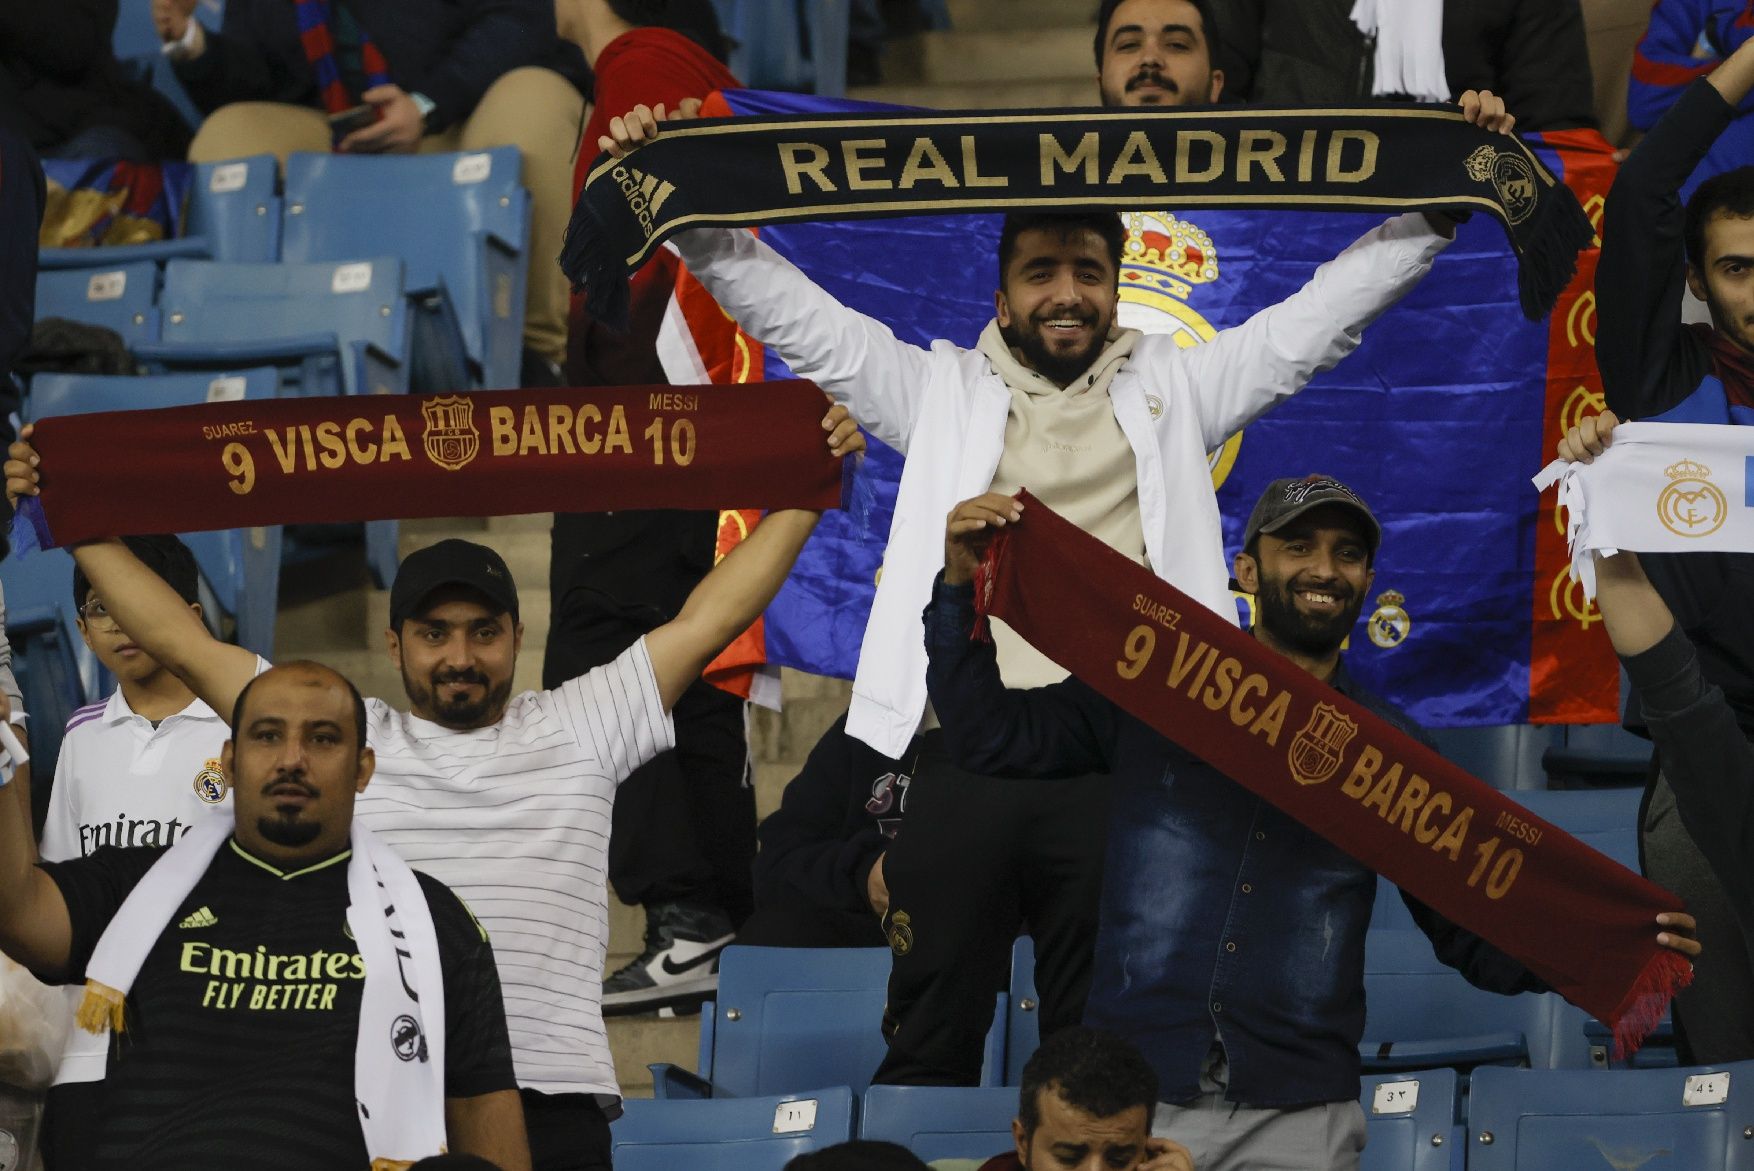 Les millors imatges de la final de la supercopa entre el Madrid i el Barça